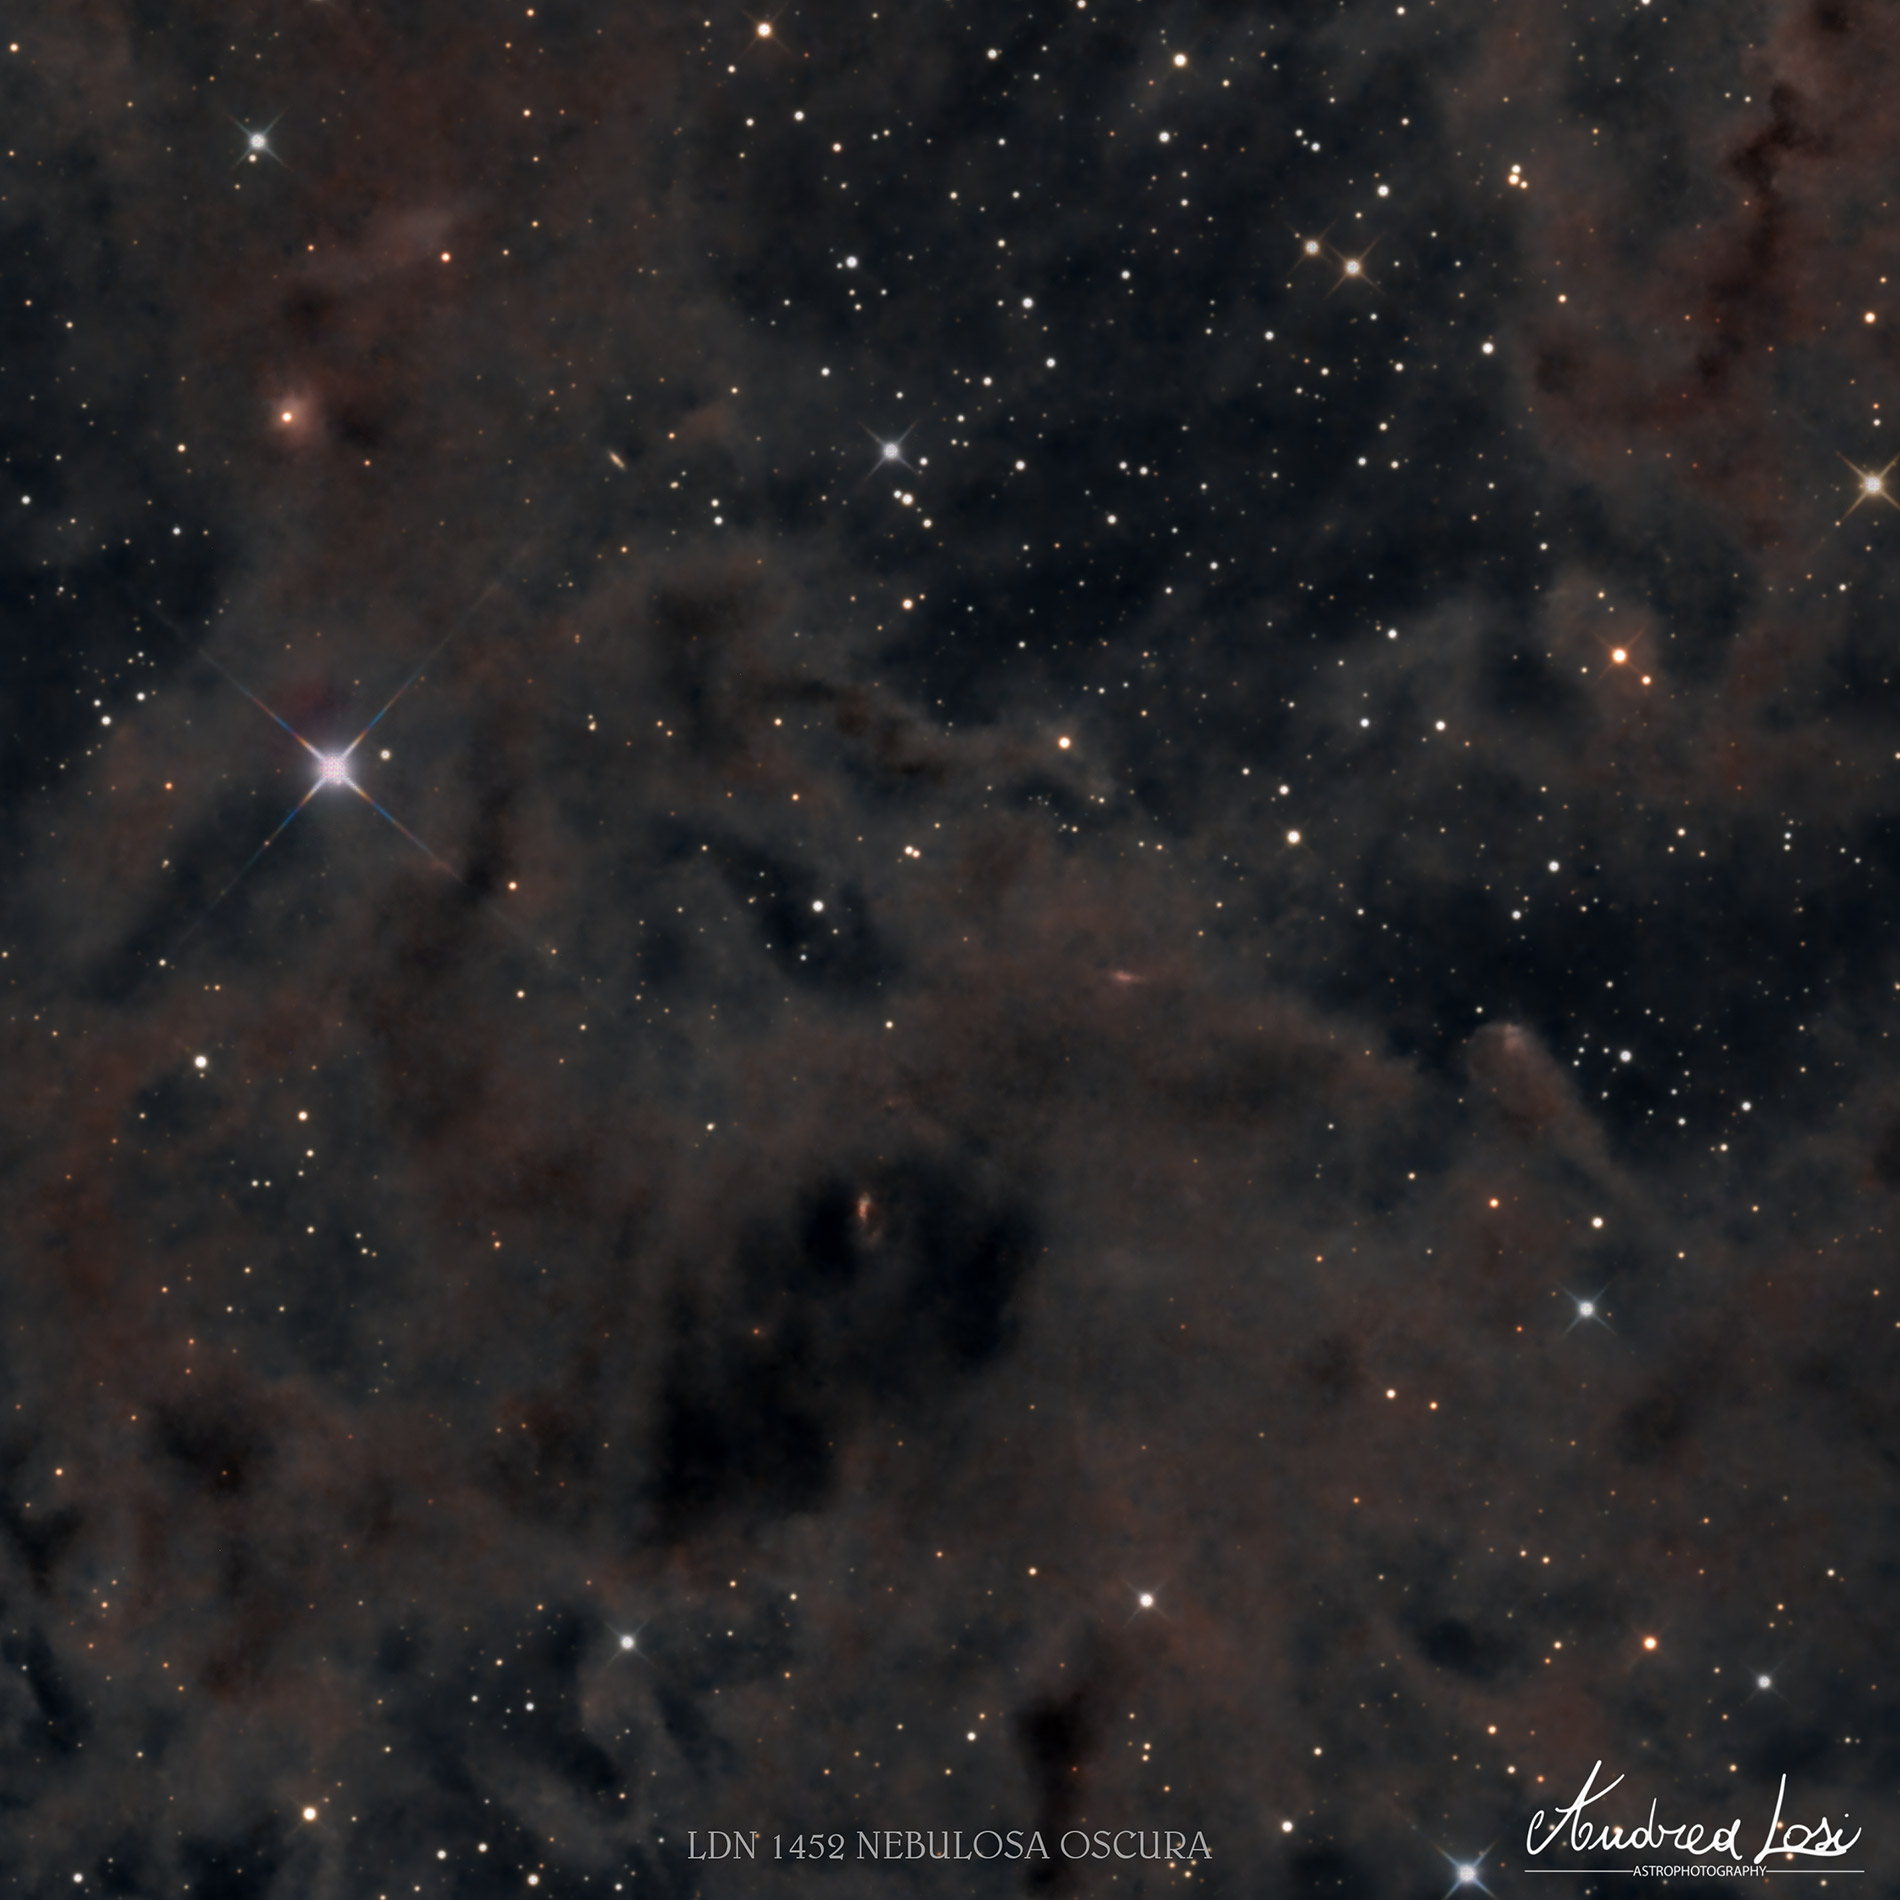 LDN 1452 dark nebula...